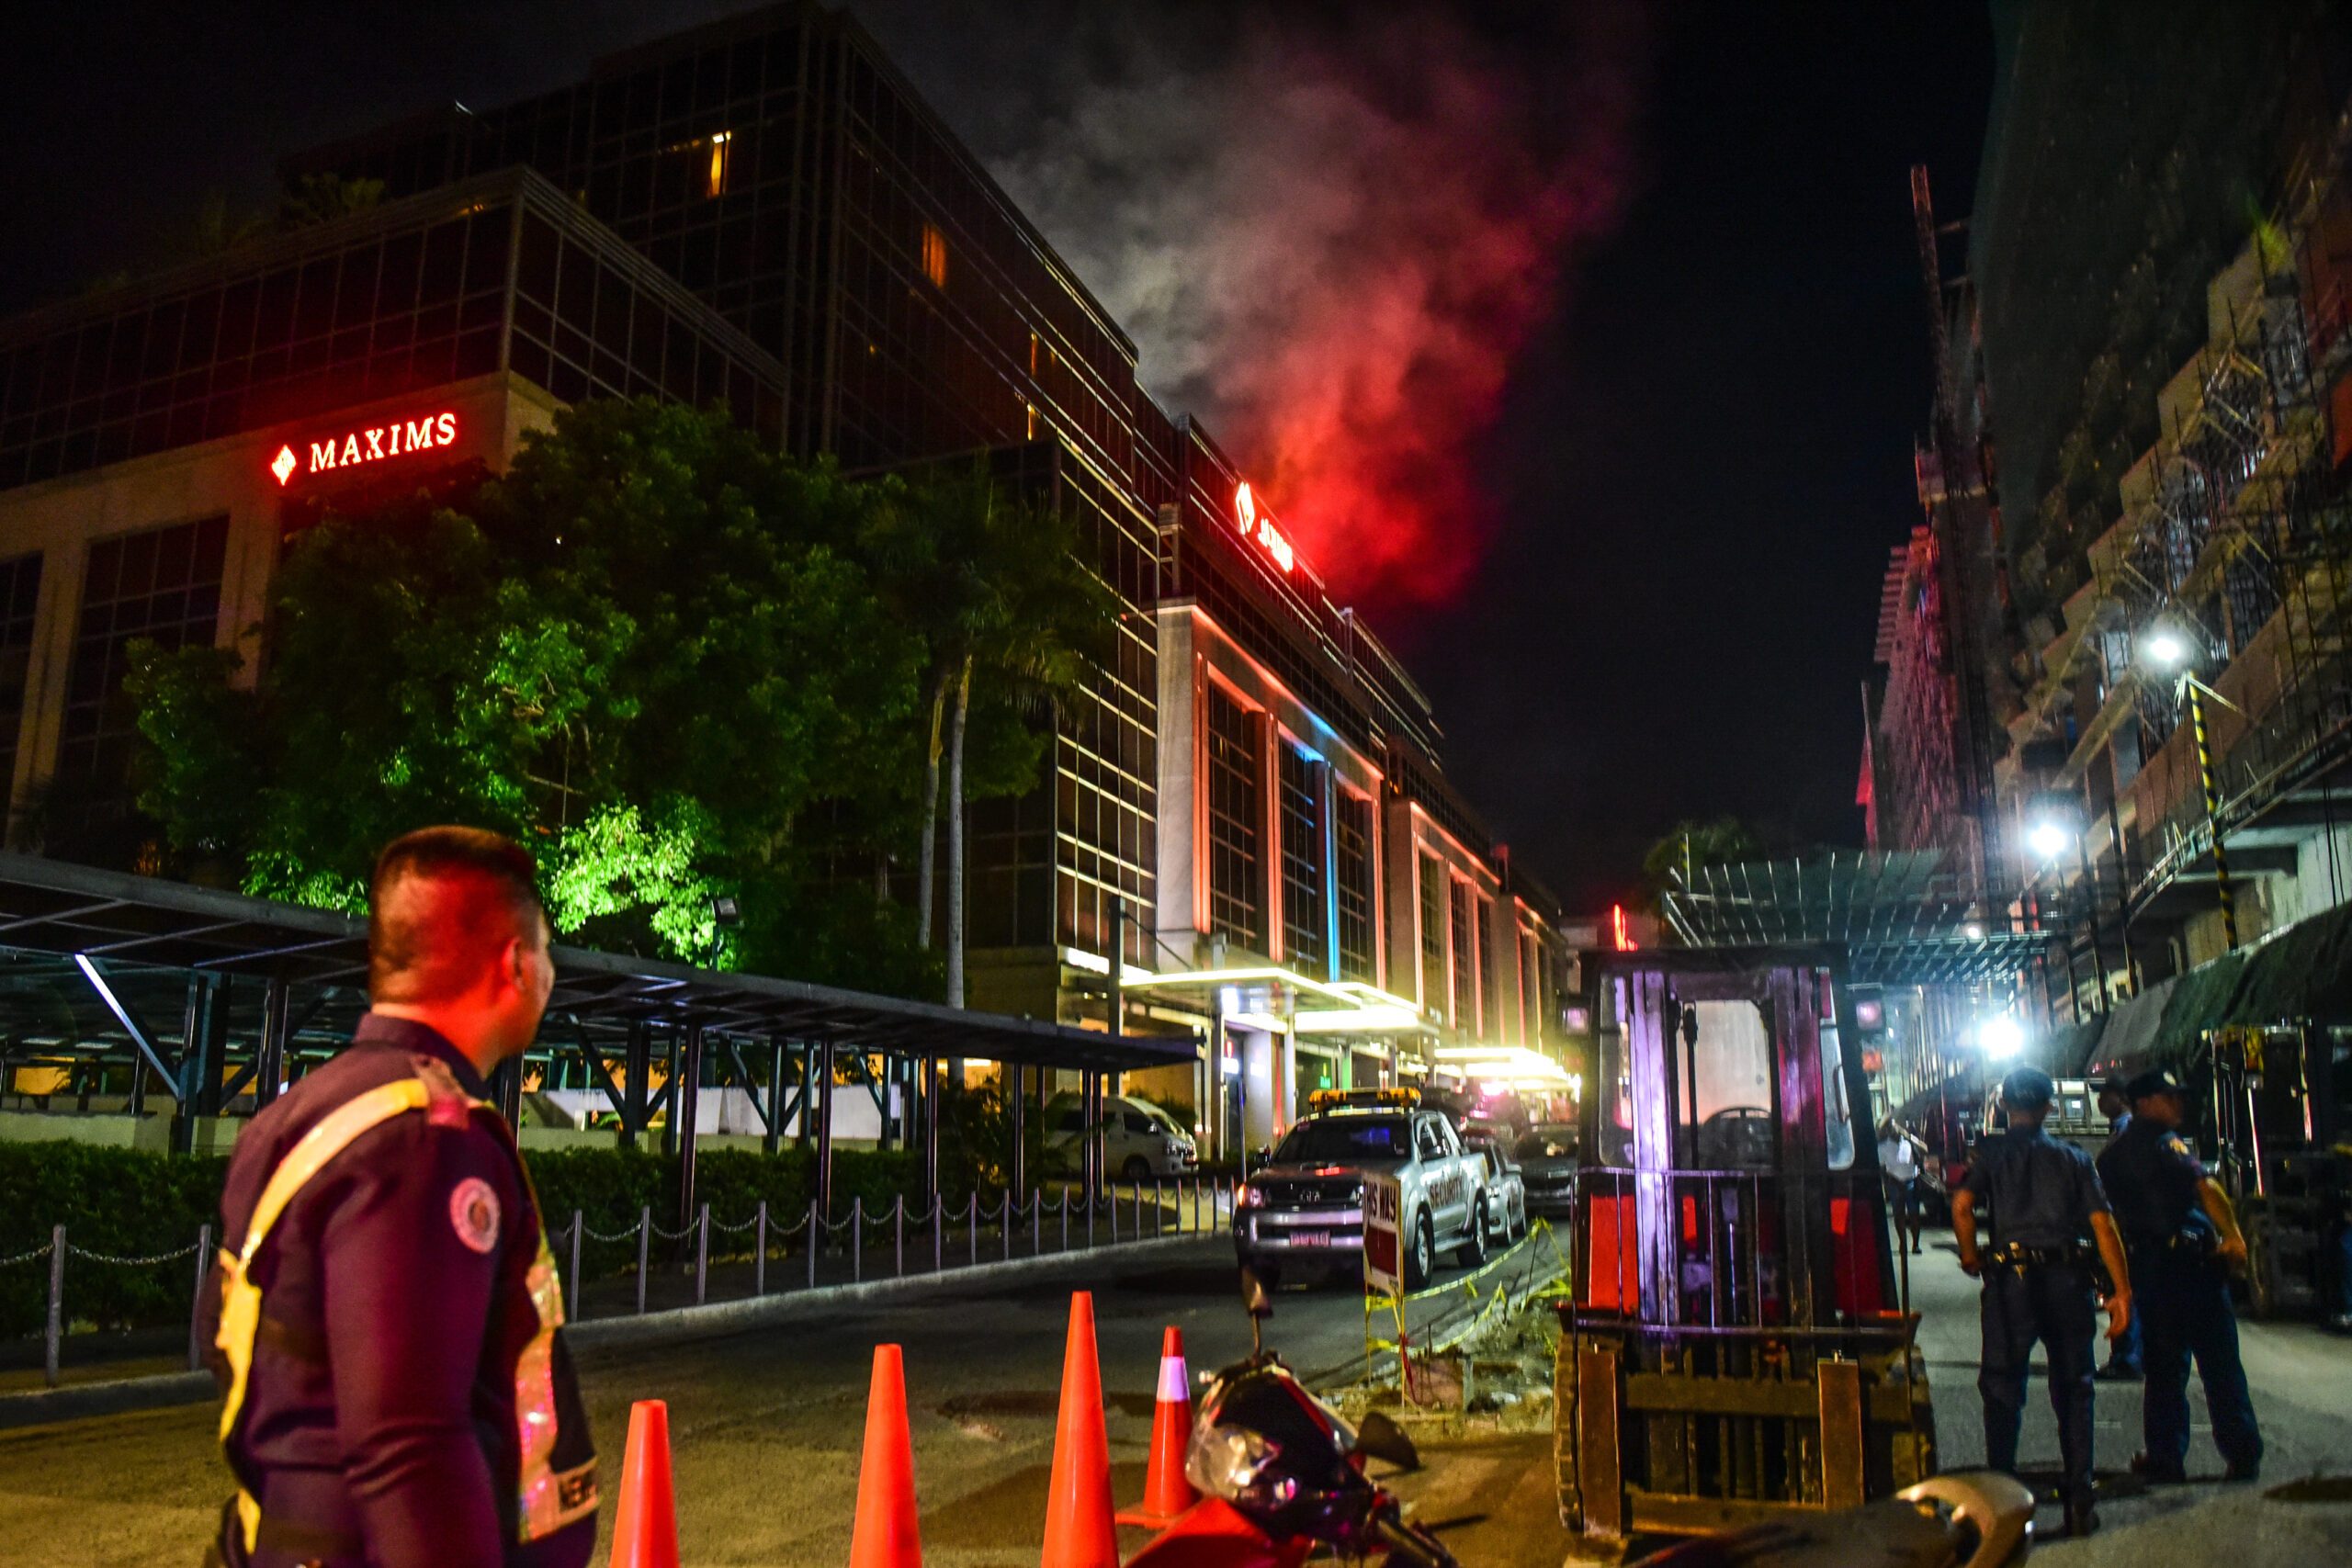 Several injured after gunshots, fire at Resorts World Manila